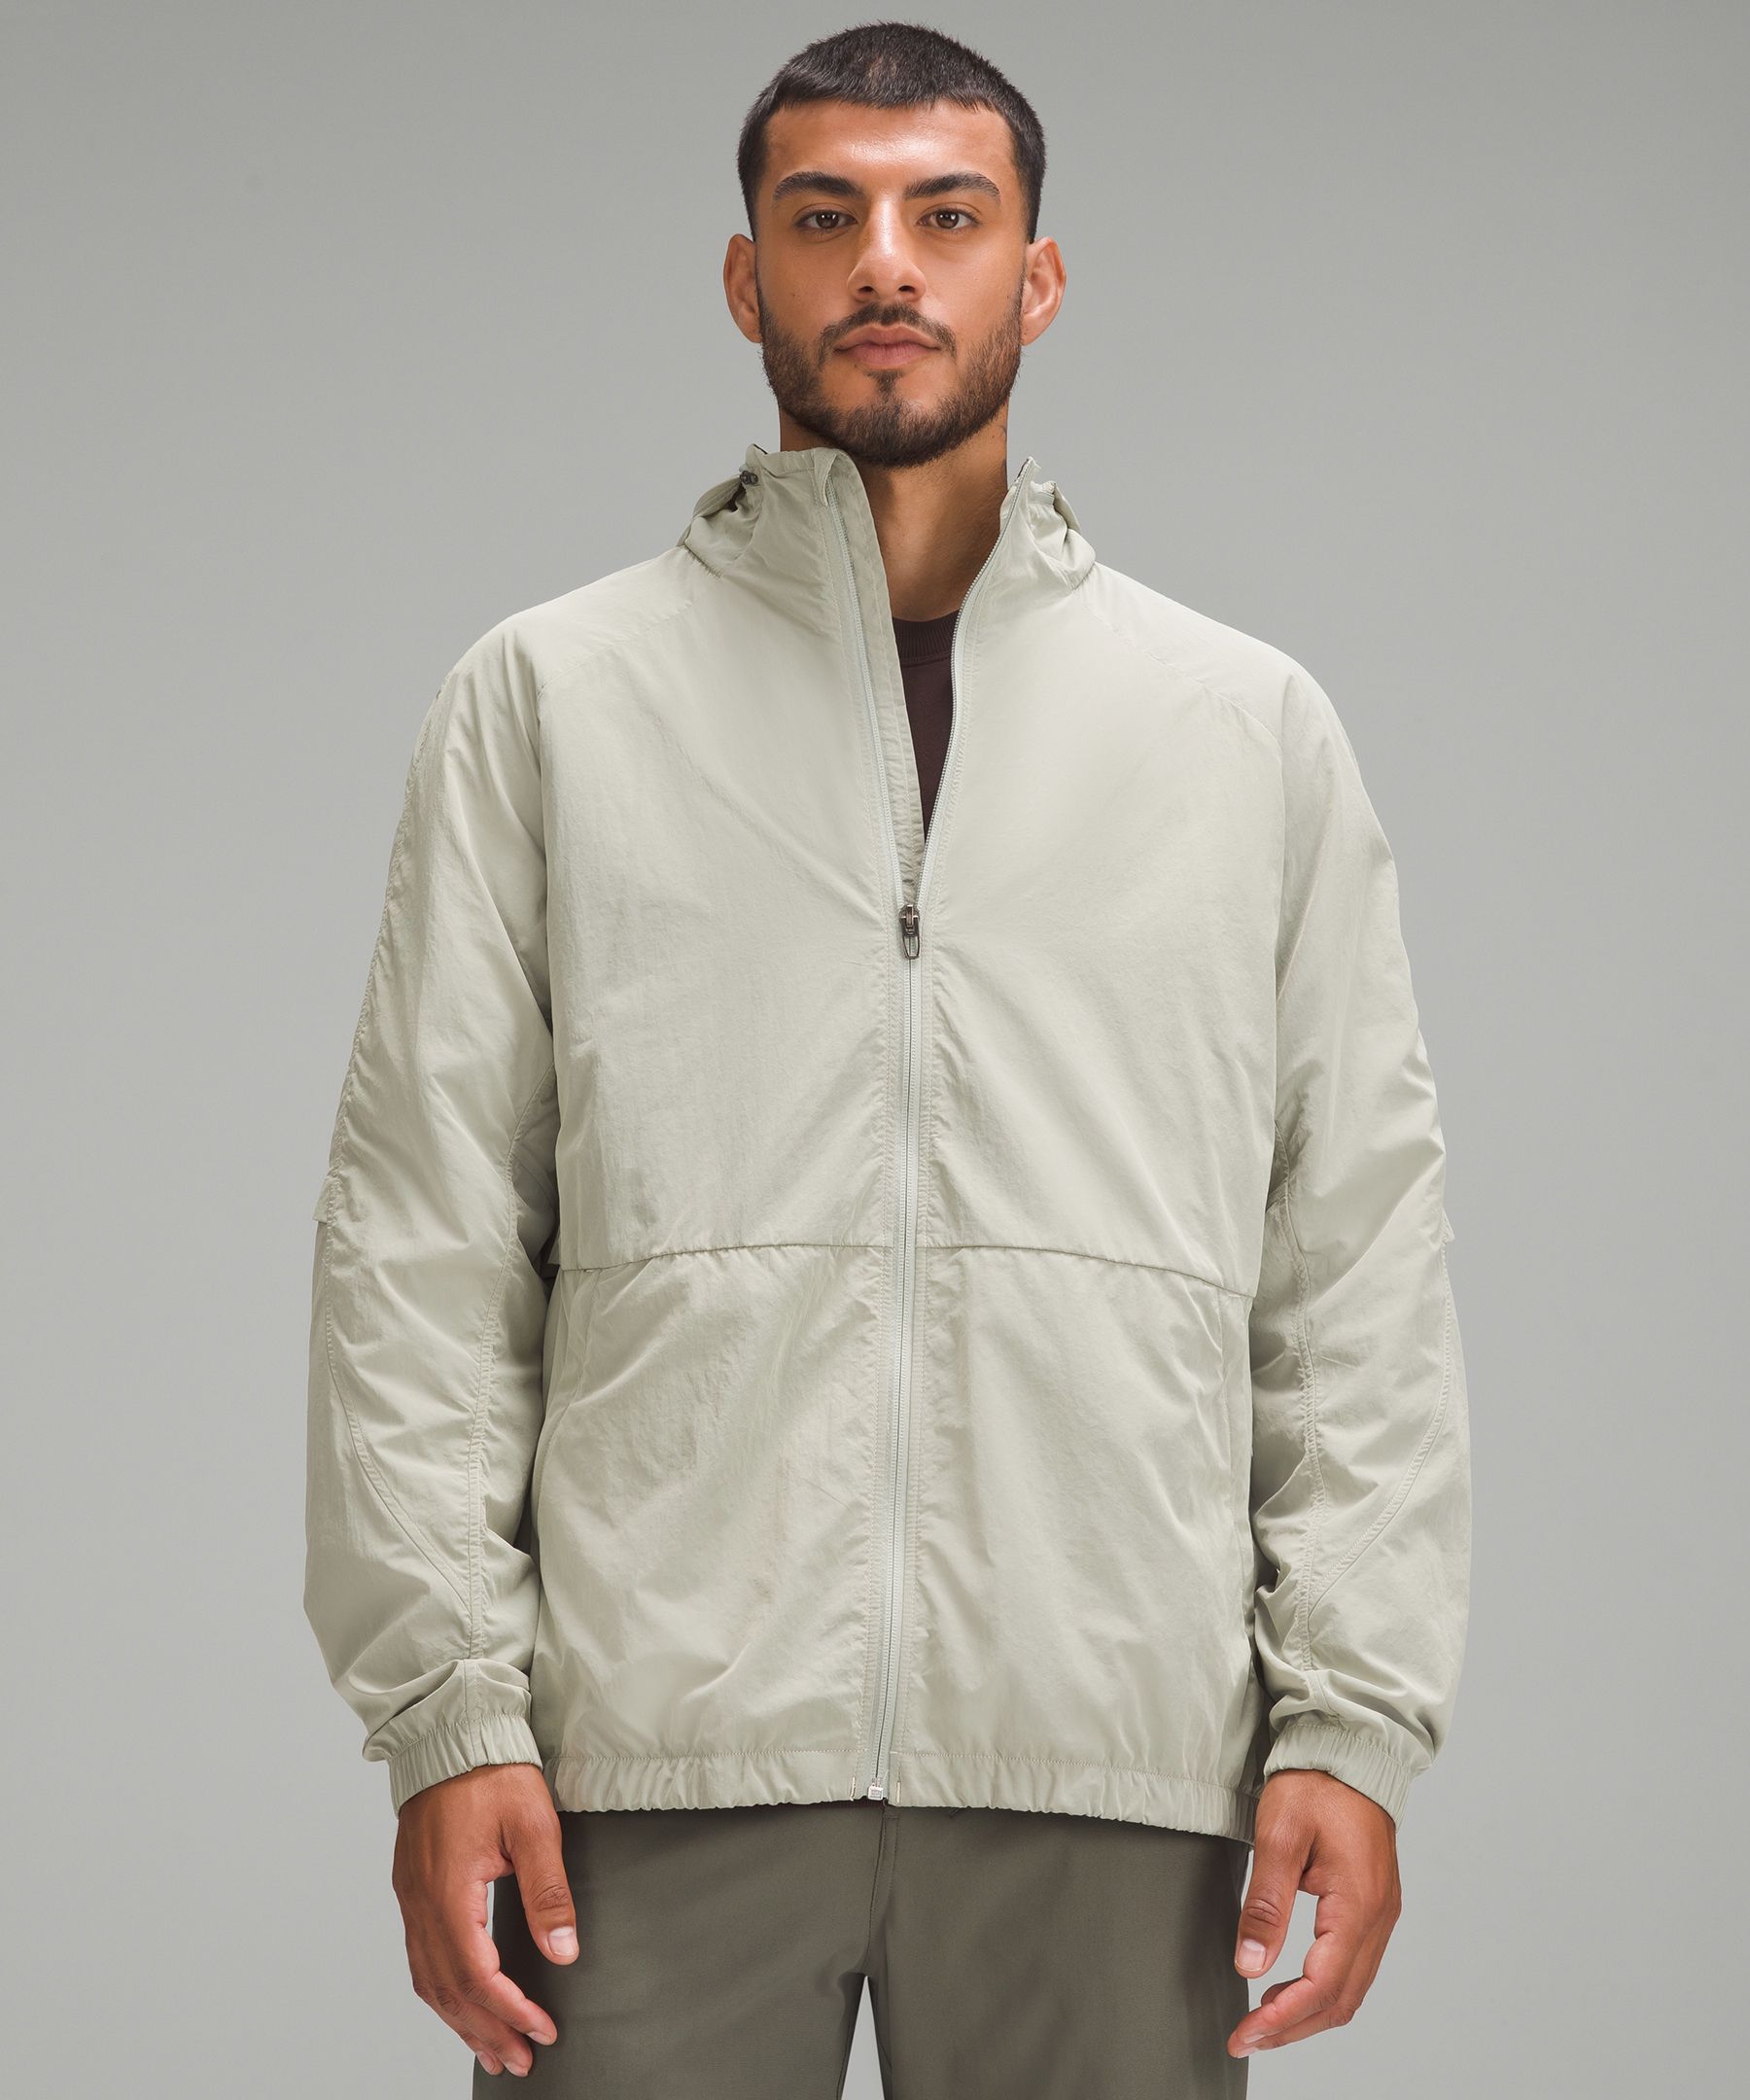 Evergreen Jacket | Men's Coats & Jackets | lululemon Canada